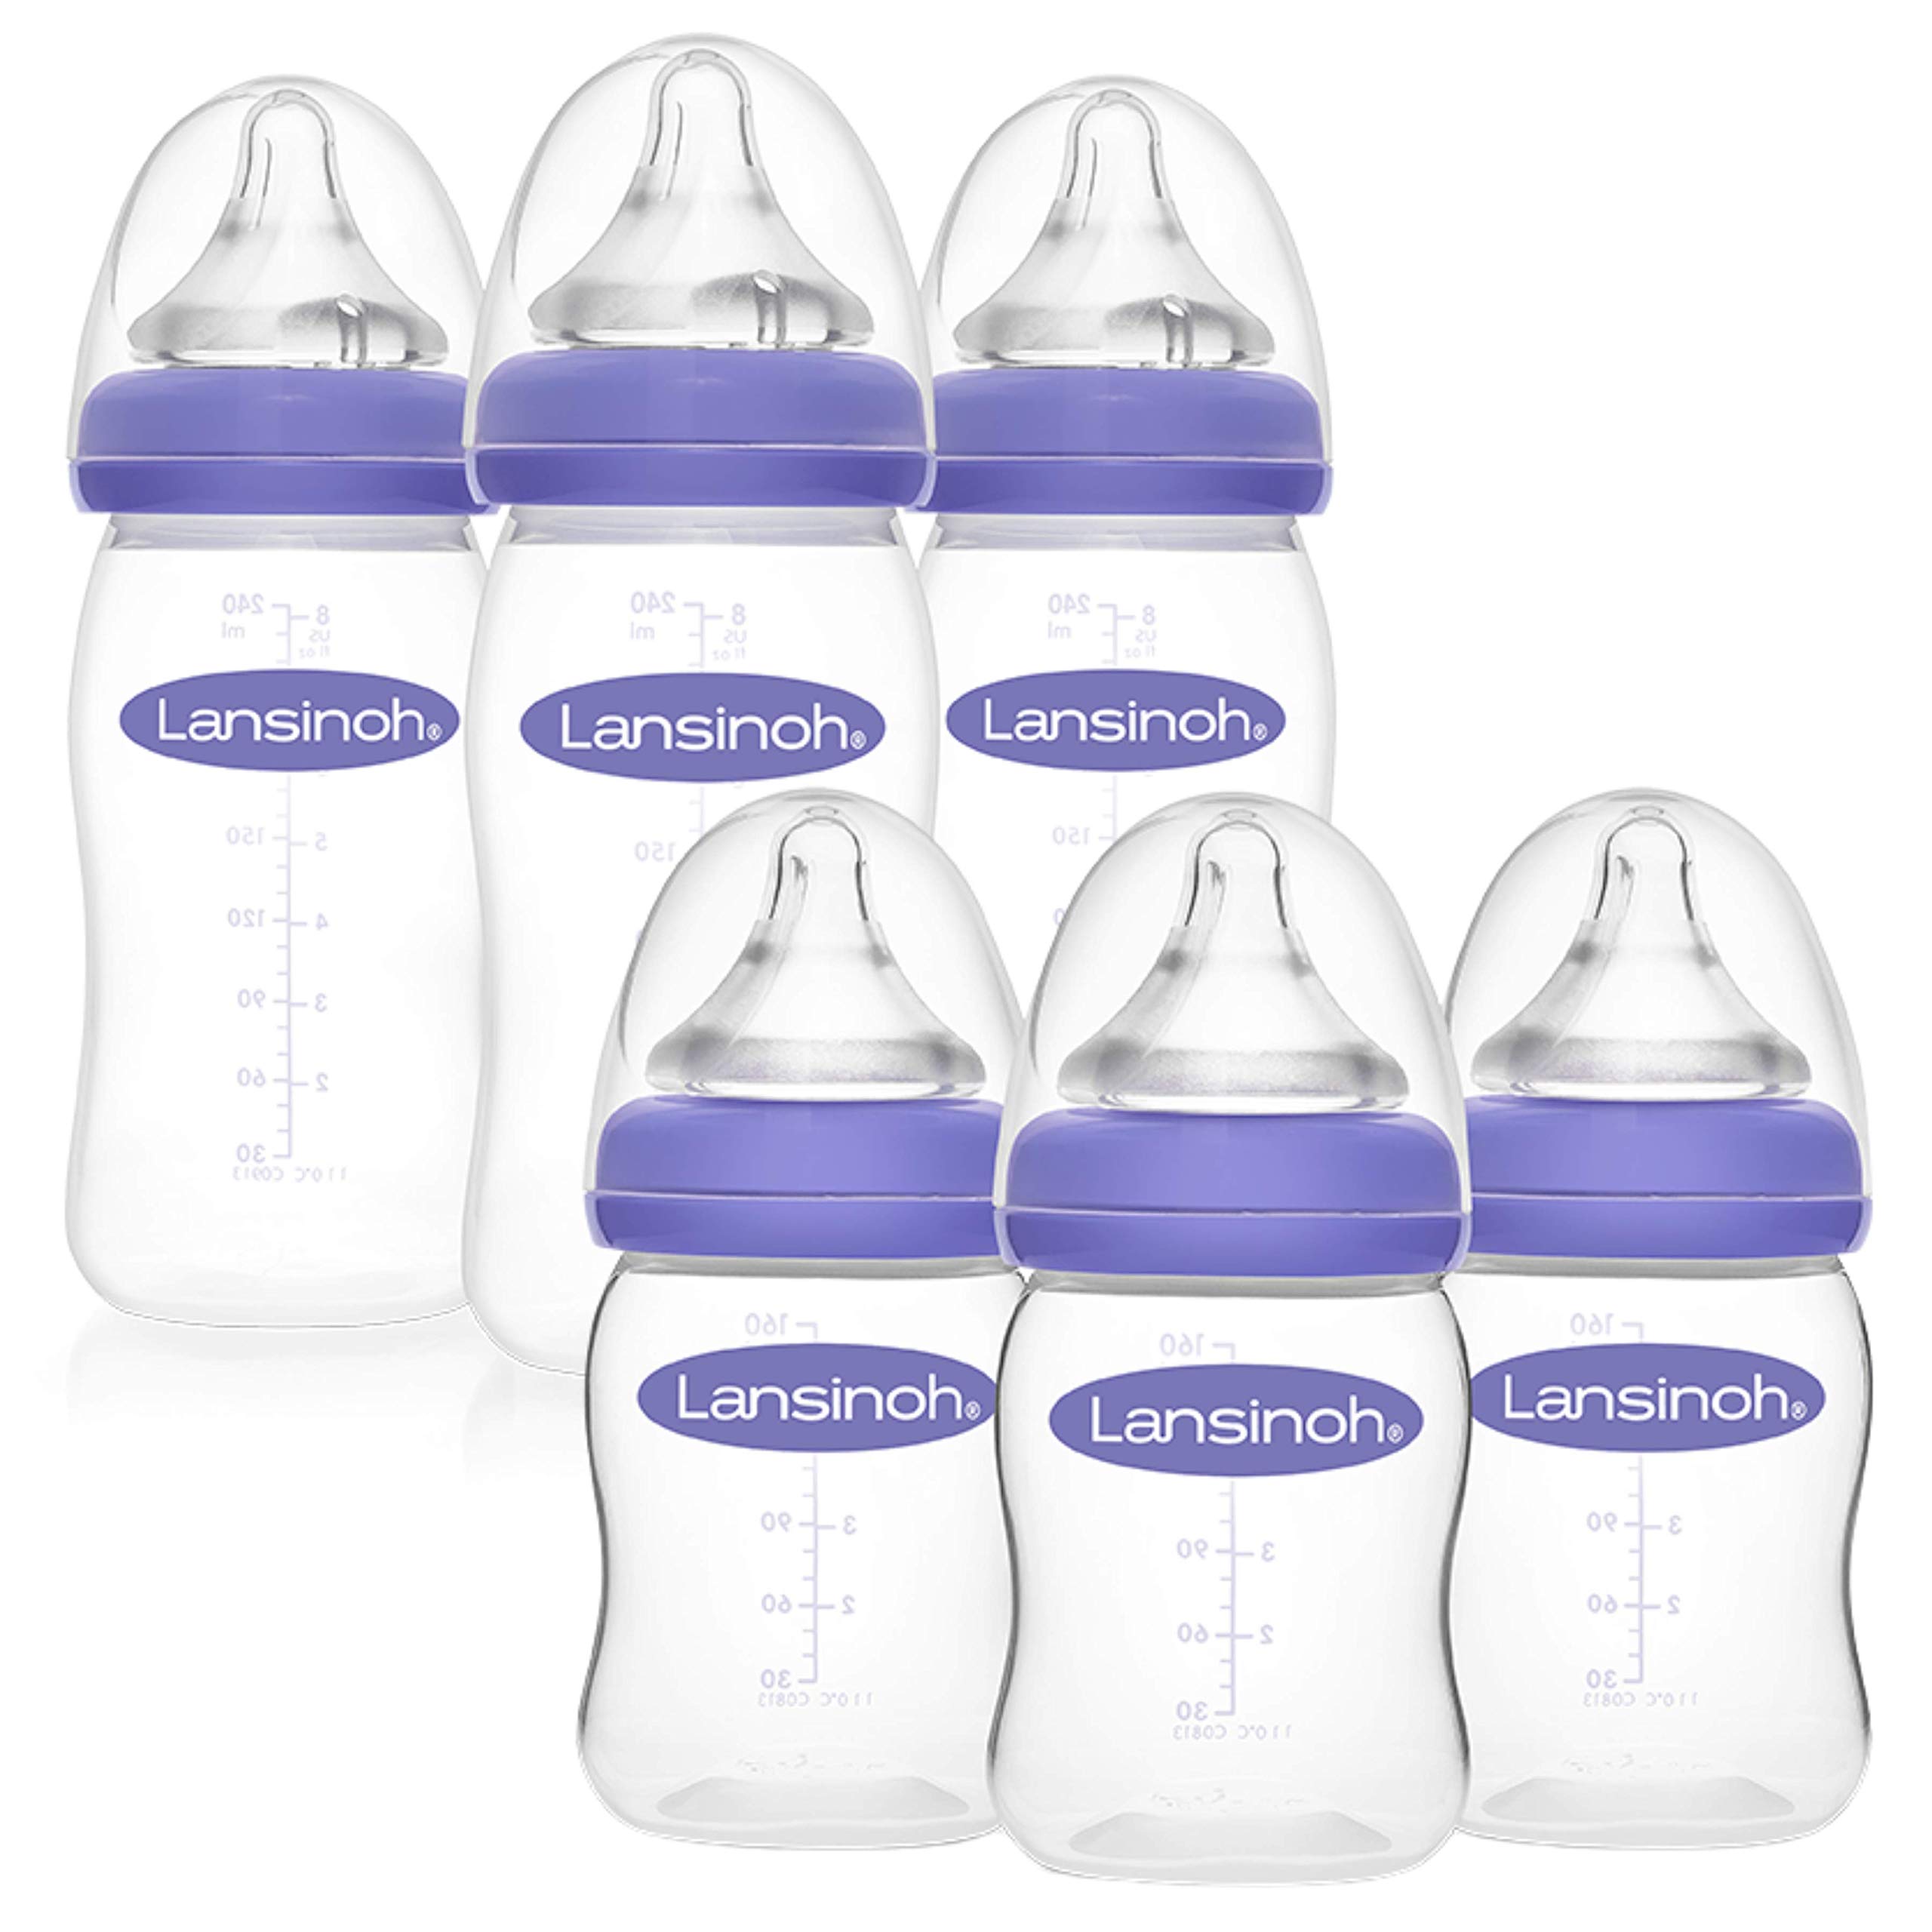 Lansinoh Glass Baby Bottles for Breastfeeding Kenya